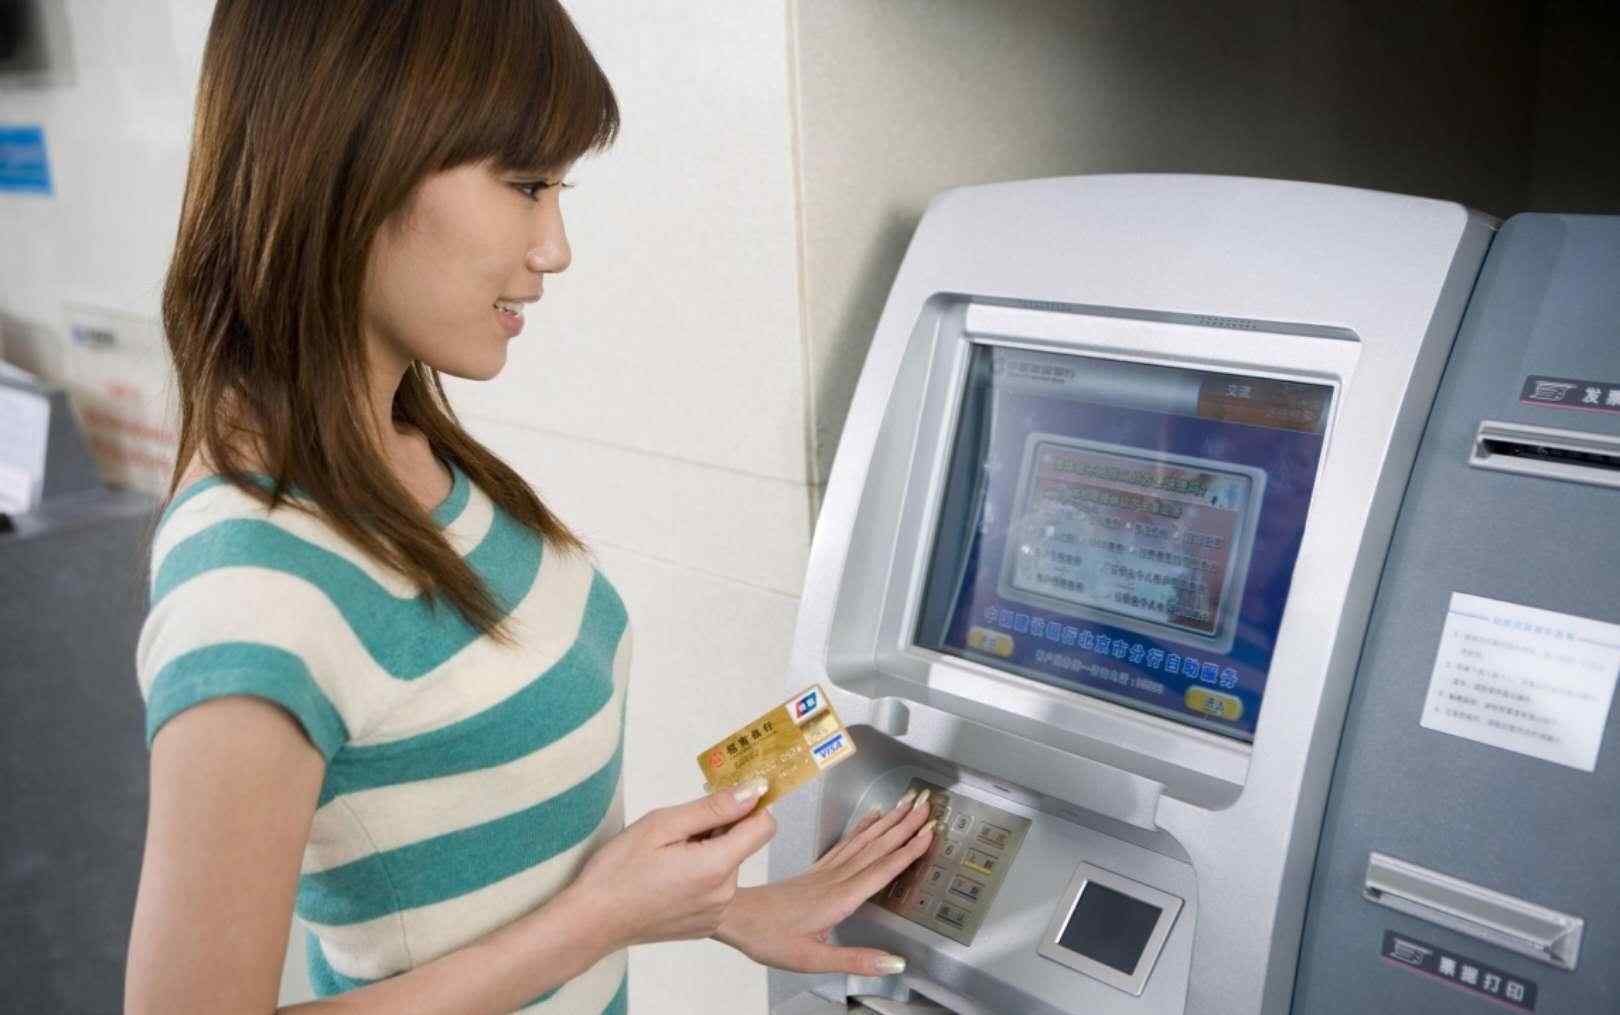 能查到余额但取不出钱 在银行ATM取款，取款不成功余额却少了，应该怎么办呢？